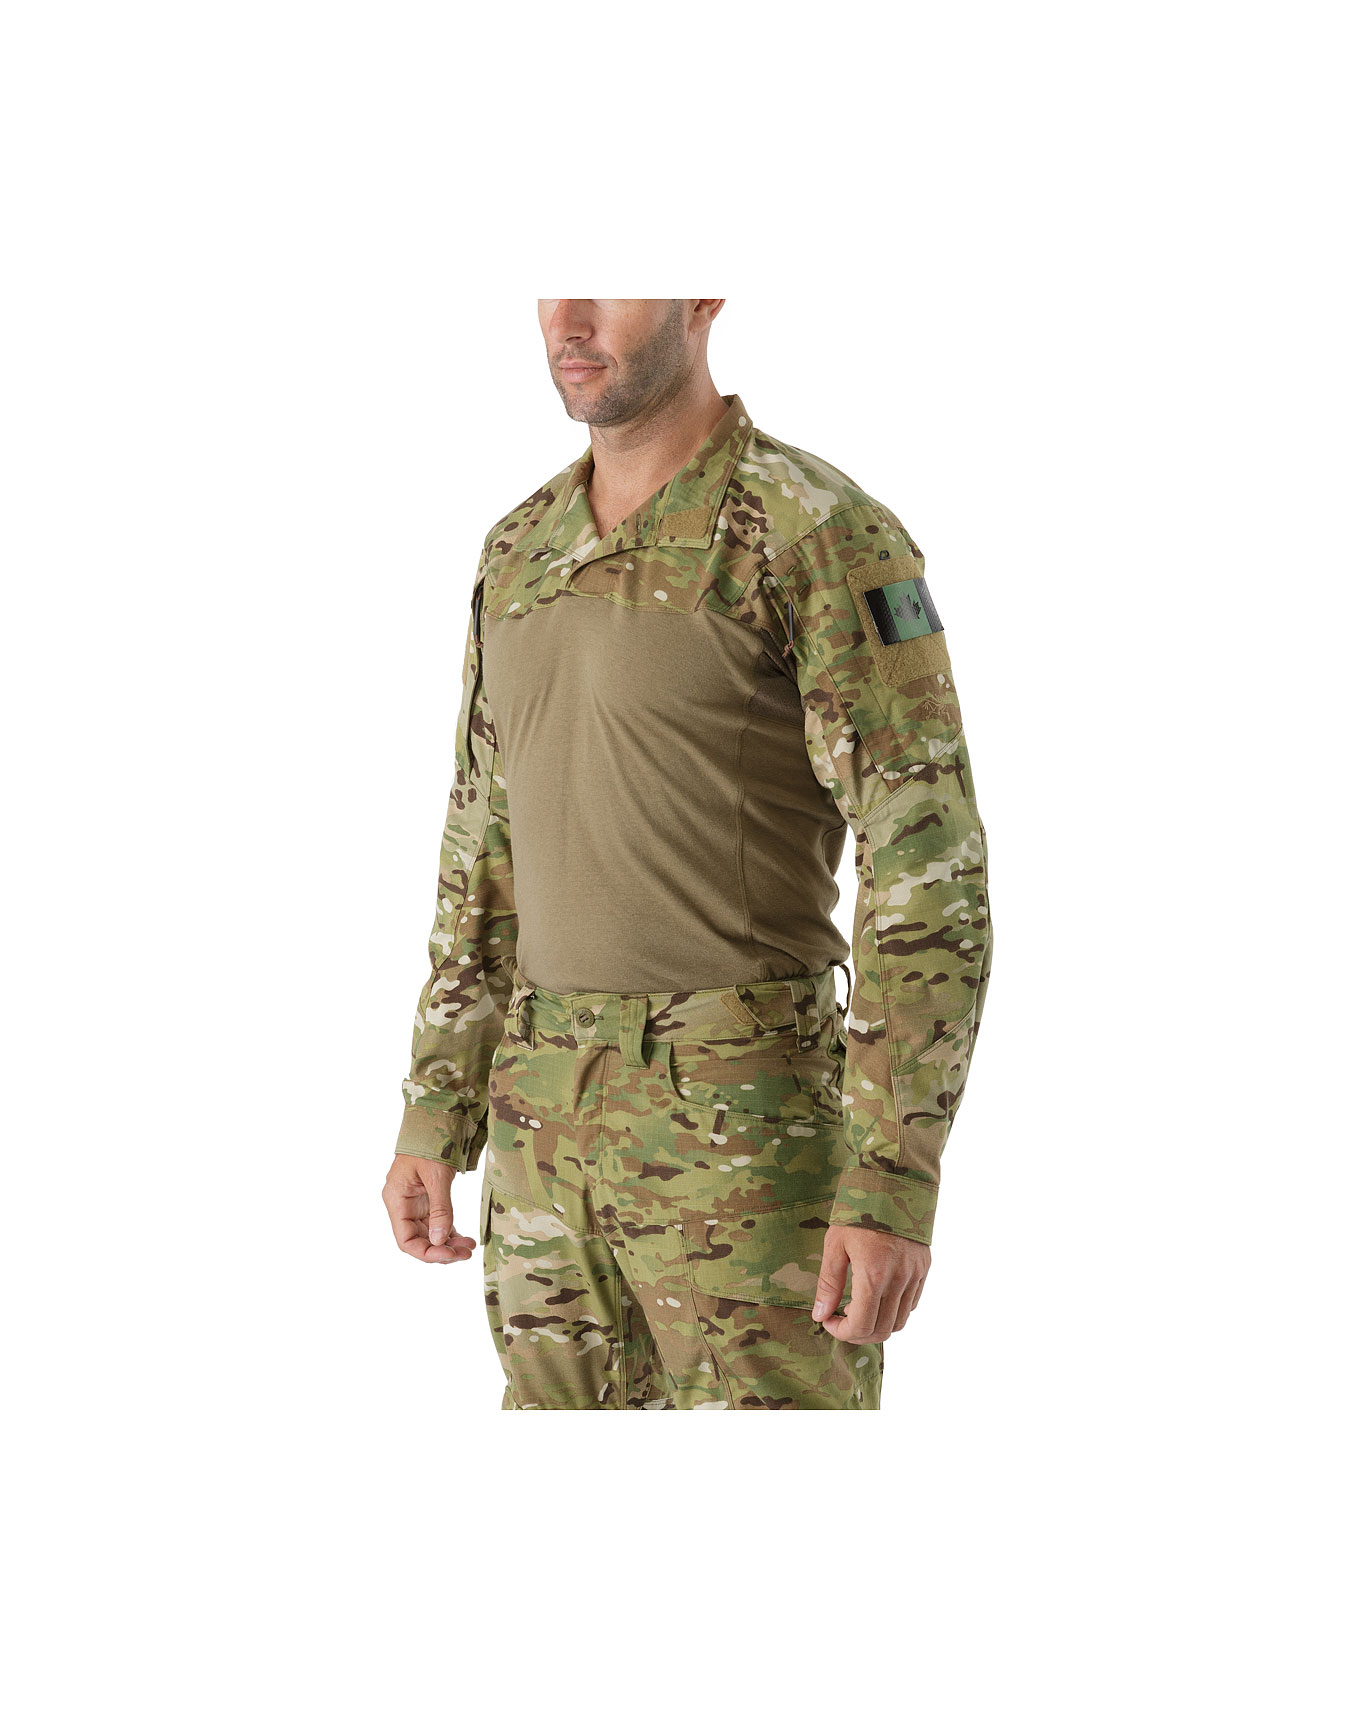 Multicam NWT Arc'teryx LEAF Assault Shirt AR Full Feature Combat Shirt 